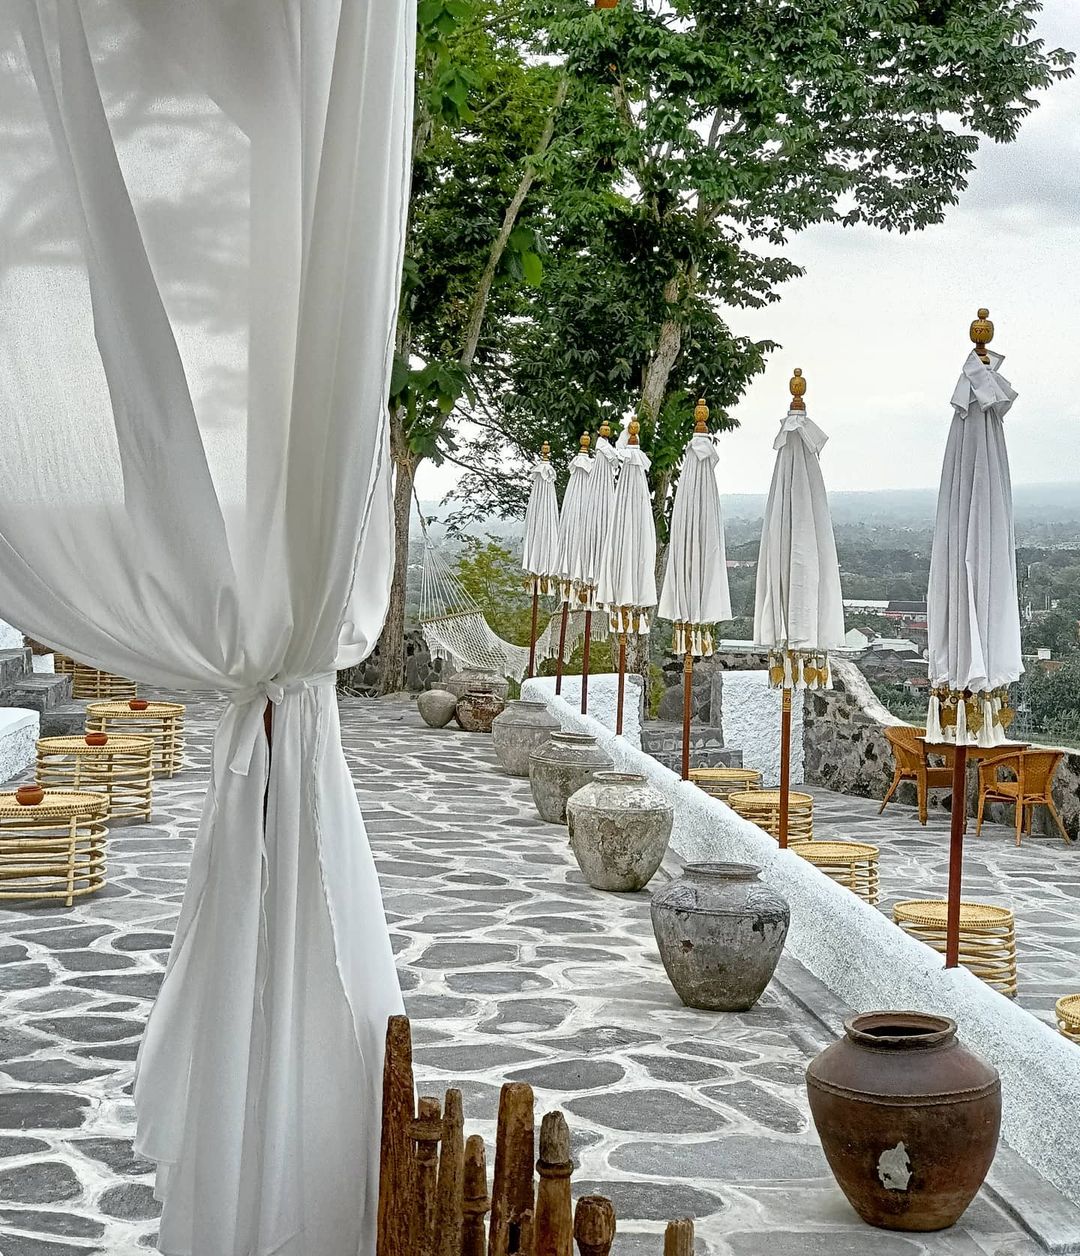 Konsep Bali Dihadirkan Di Sini Dengan Adanya Payung Payung Cantik